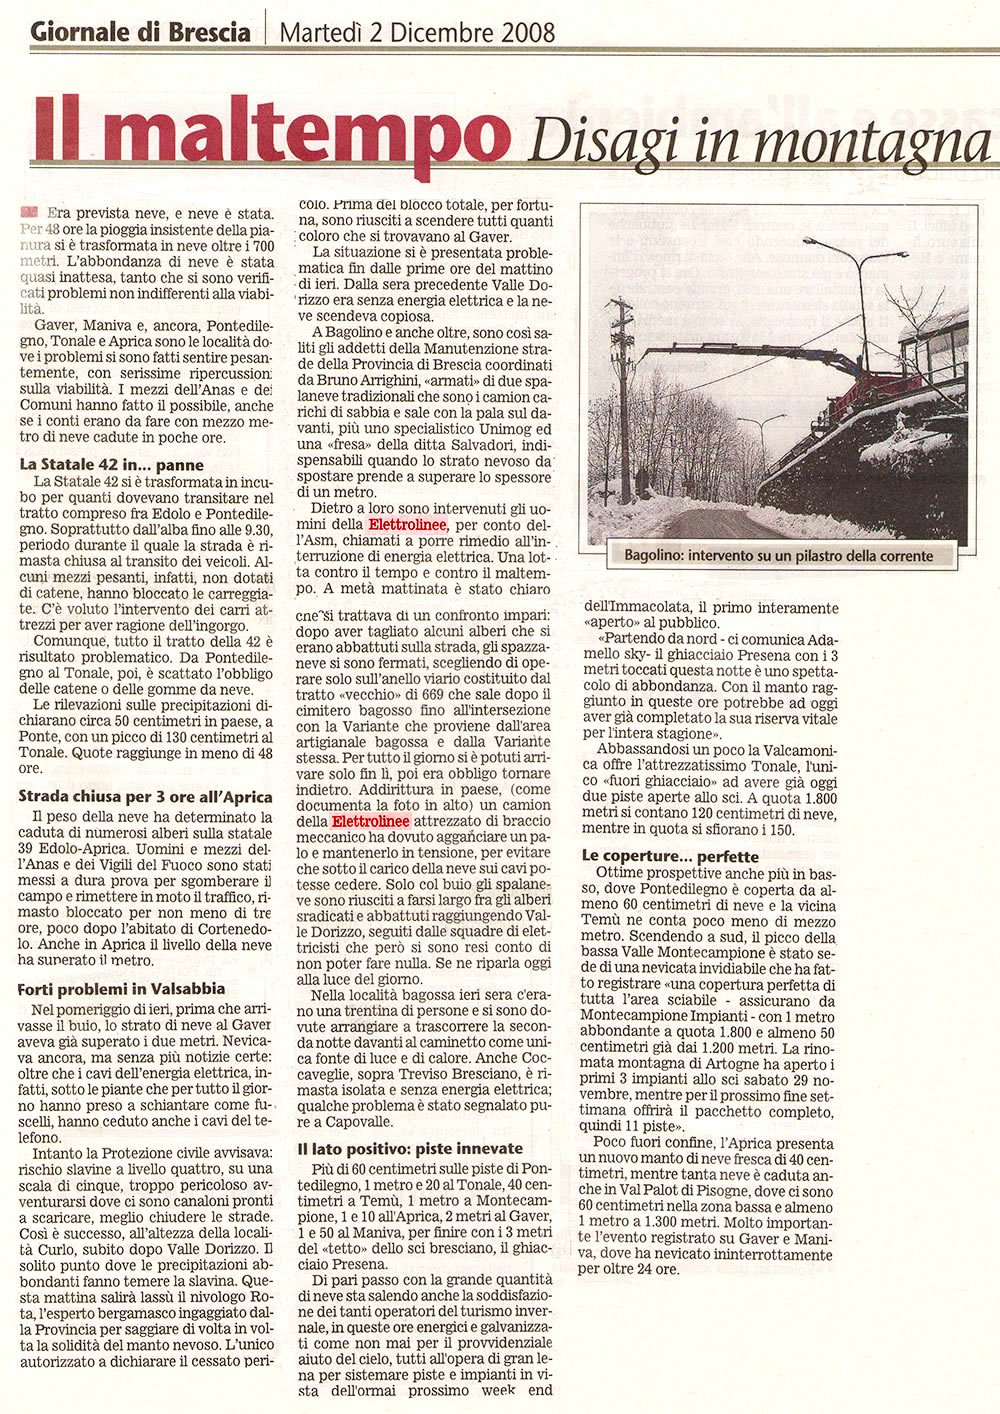 Giornale di Brescia 2 Dicembre 2008